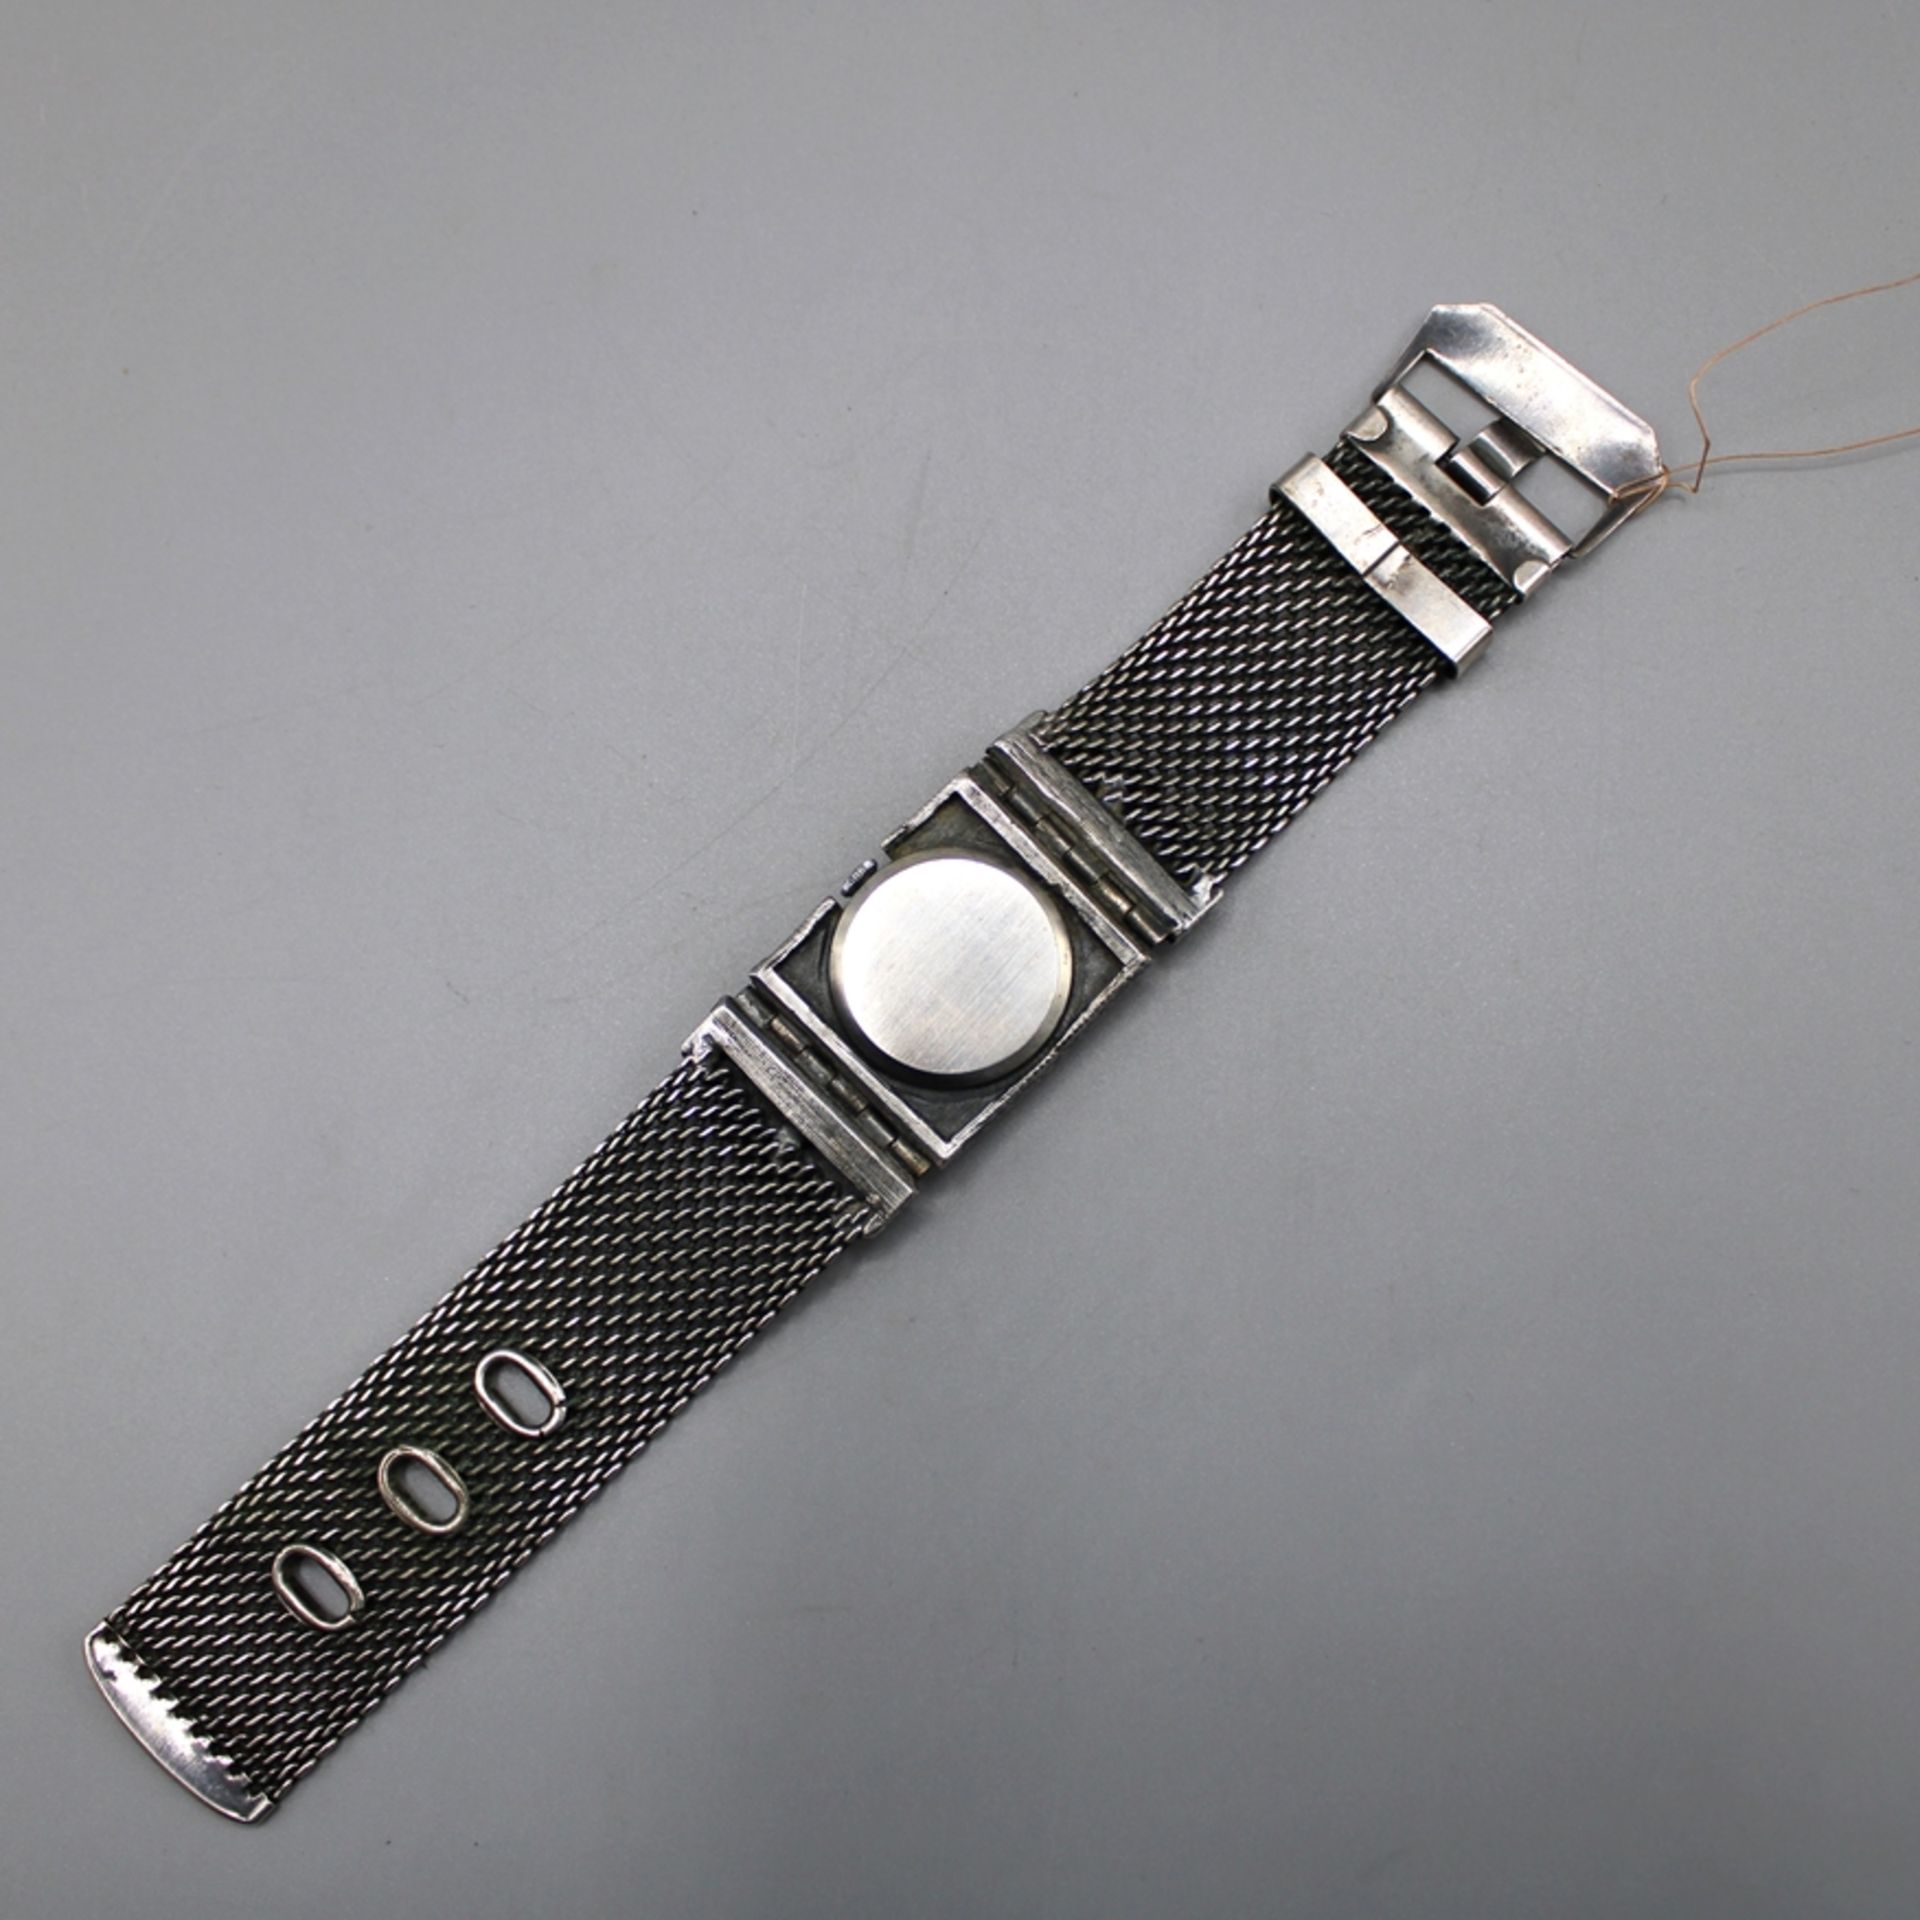 Corocraft Damenuhr Handaufzug, die Uhr läuft an (Ganggenauigkeit u. Laufdauer nicht geprüft) - Bild 3 aus 3